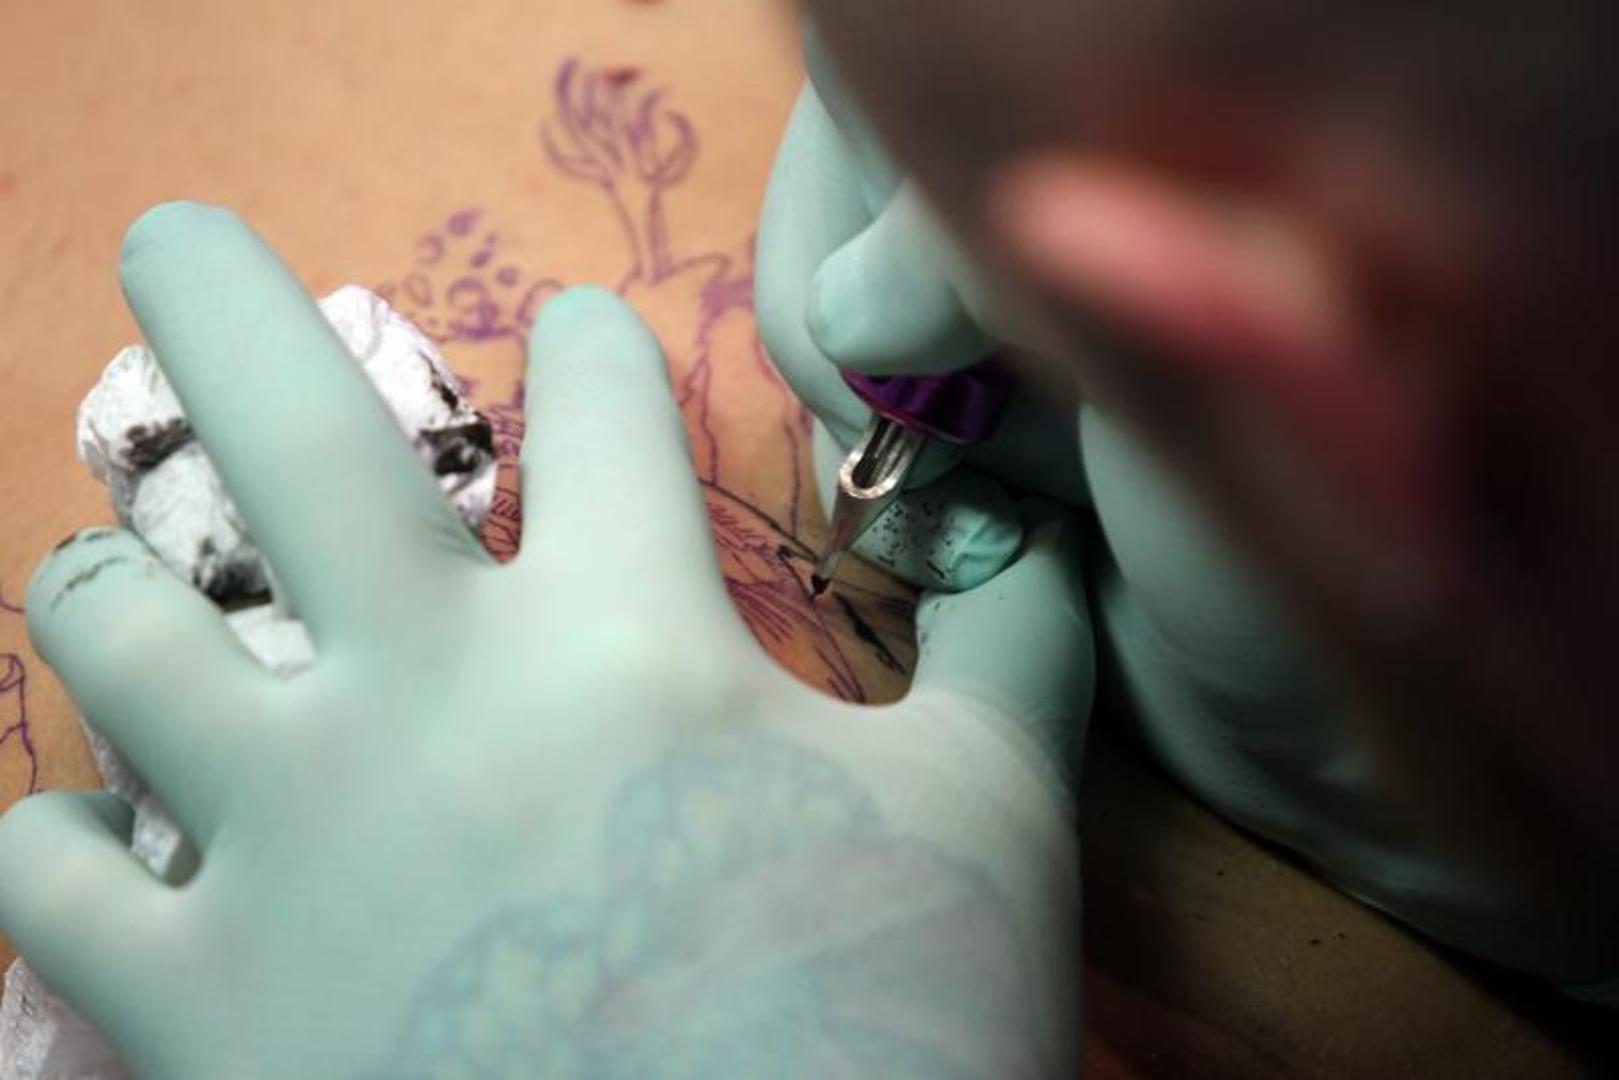 Ne tetovirajte se na ljetovanju – Ako se odlučite na tetovažu, uvijek to učinite u licenciranom i urednom salonu kako se ne biste zarazili hepatitisom. Budite jako oprezni ako ste u inozemstvu.